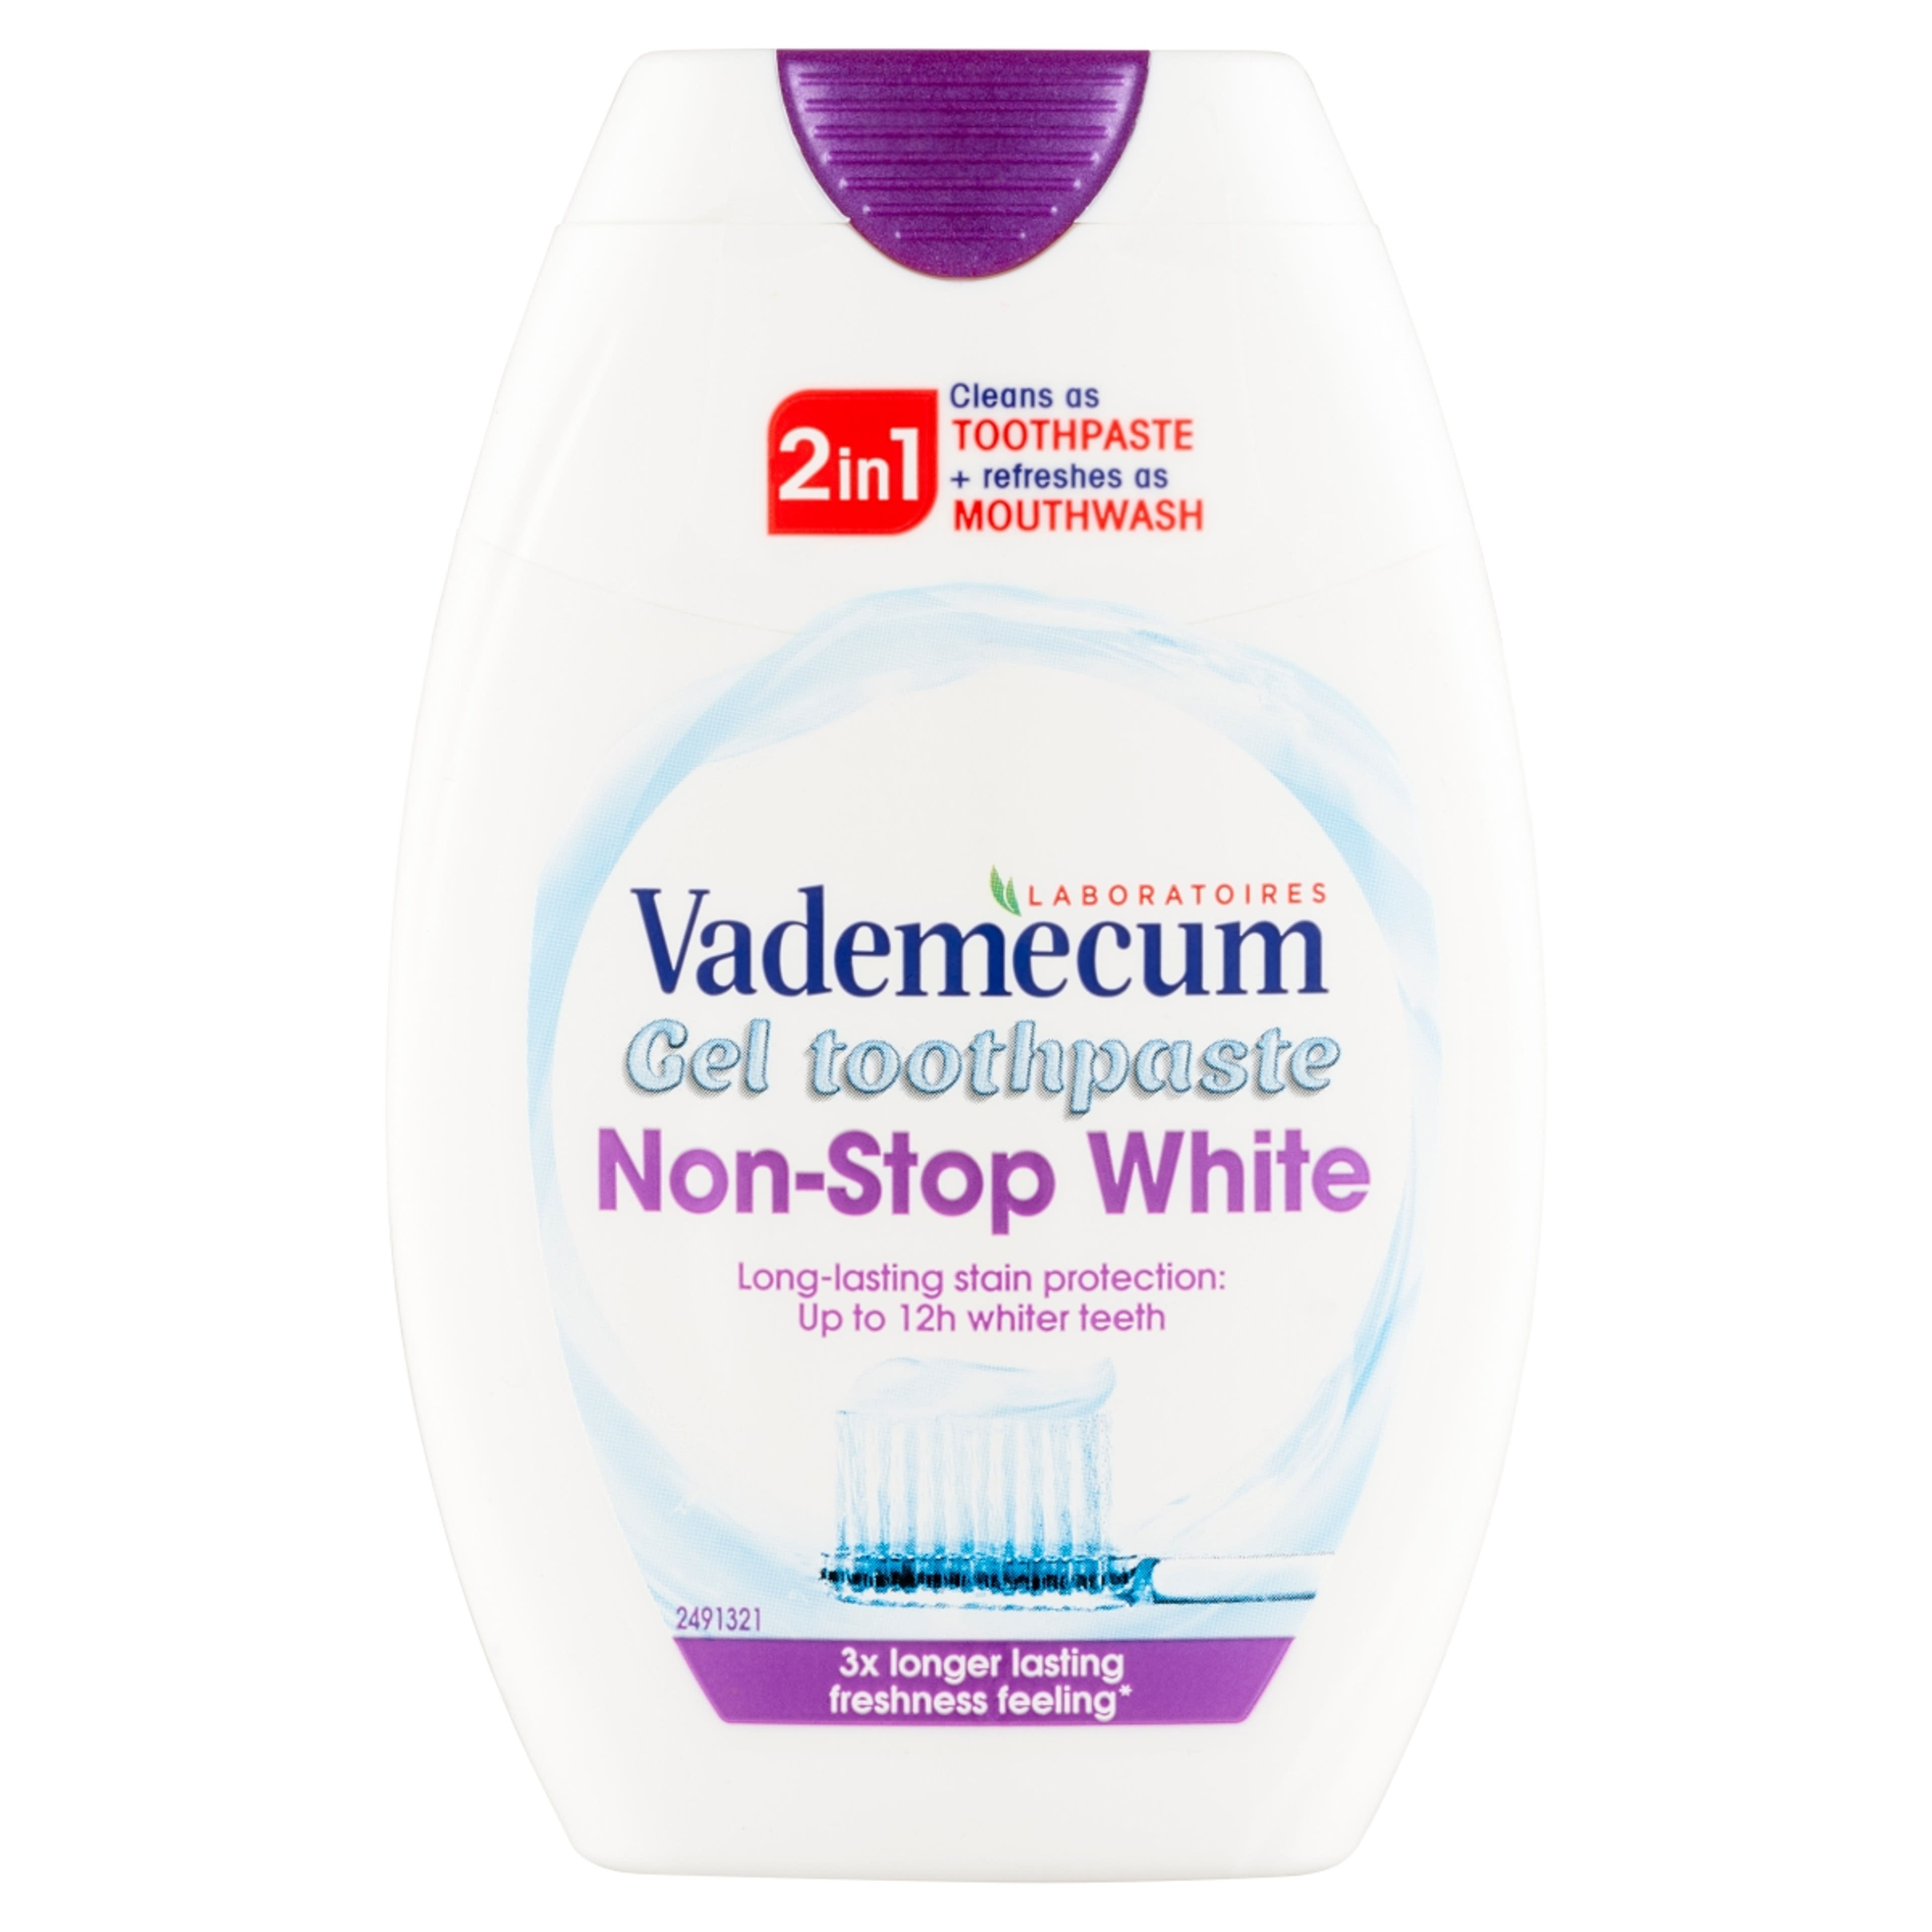 Vademecum 2in1 Non Stop White fogkrém - 75 ml-1